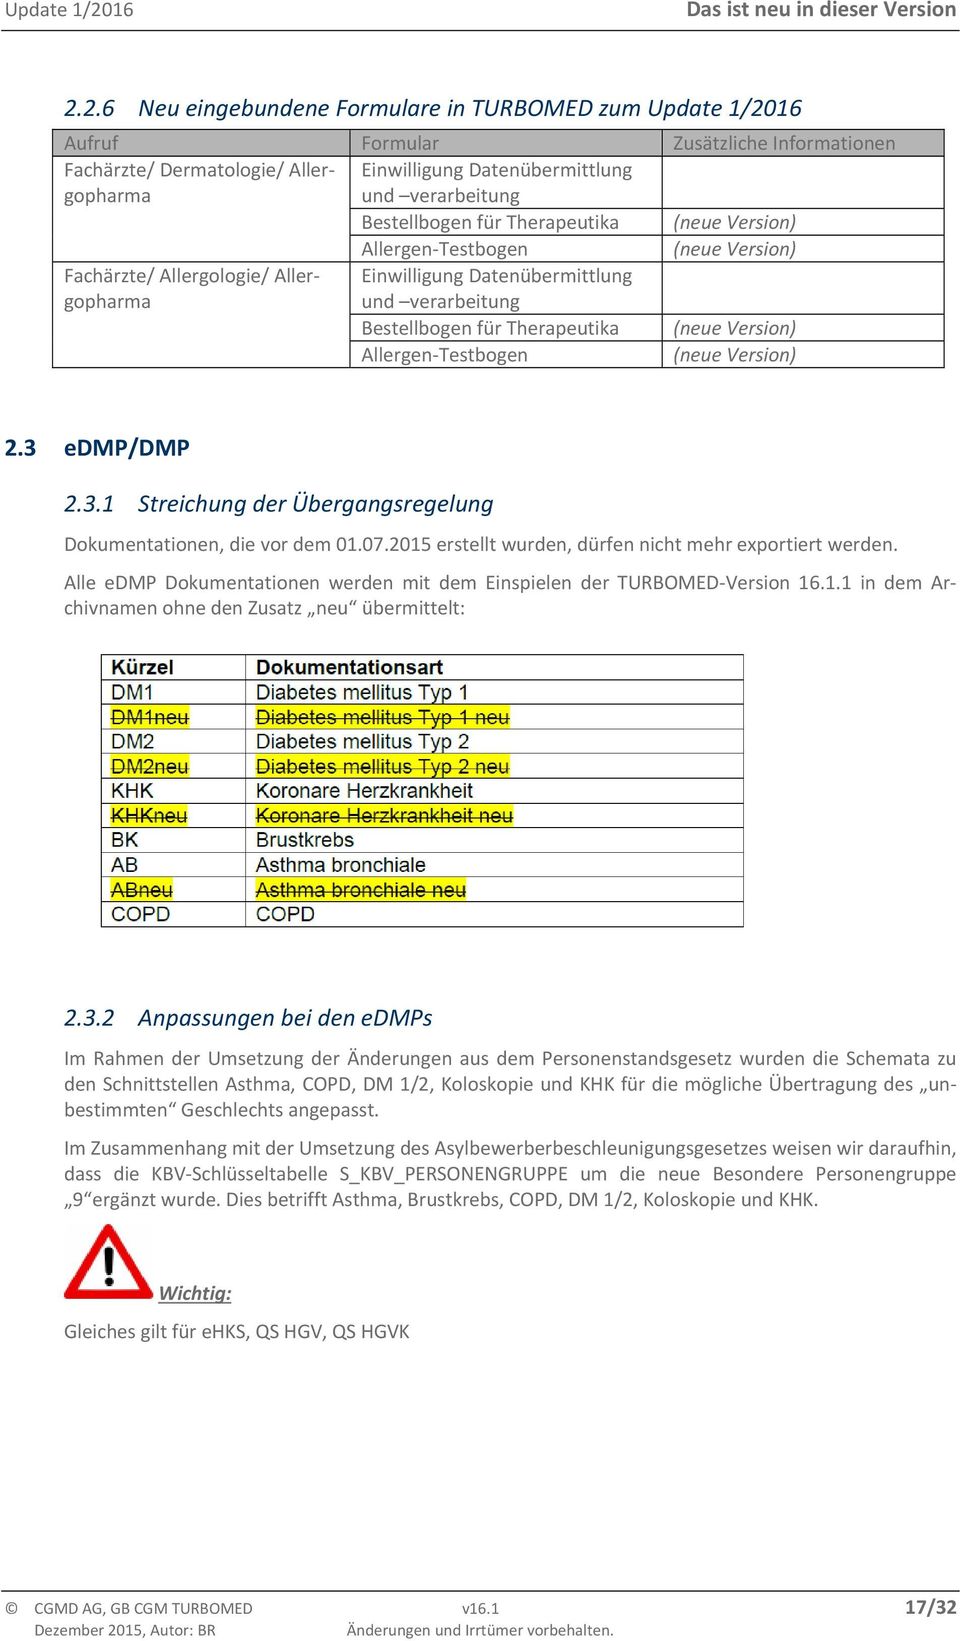 Allergen Testbogen (neue Version) (neue Version) 2.3 edmp/dmp 2.3.1 Streichung der Übergangsregelung Dokumentationen, die vor dem 01.07.2015 erstellt wurden, dürfen nicht mehr exportiert werden.